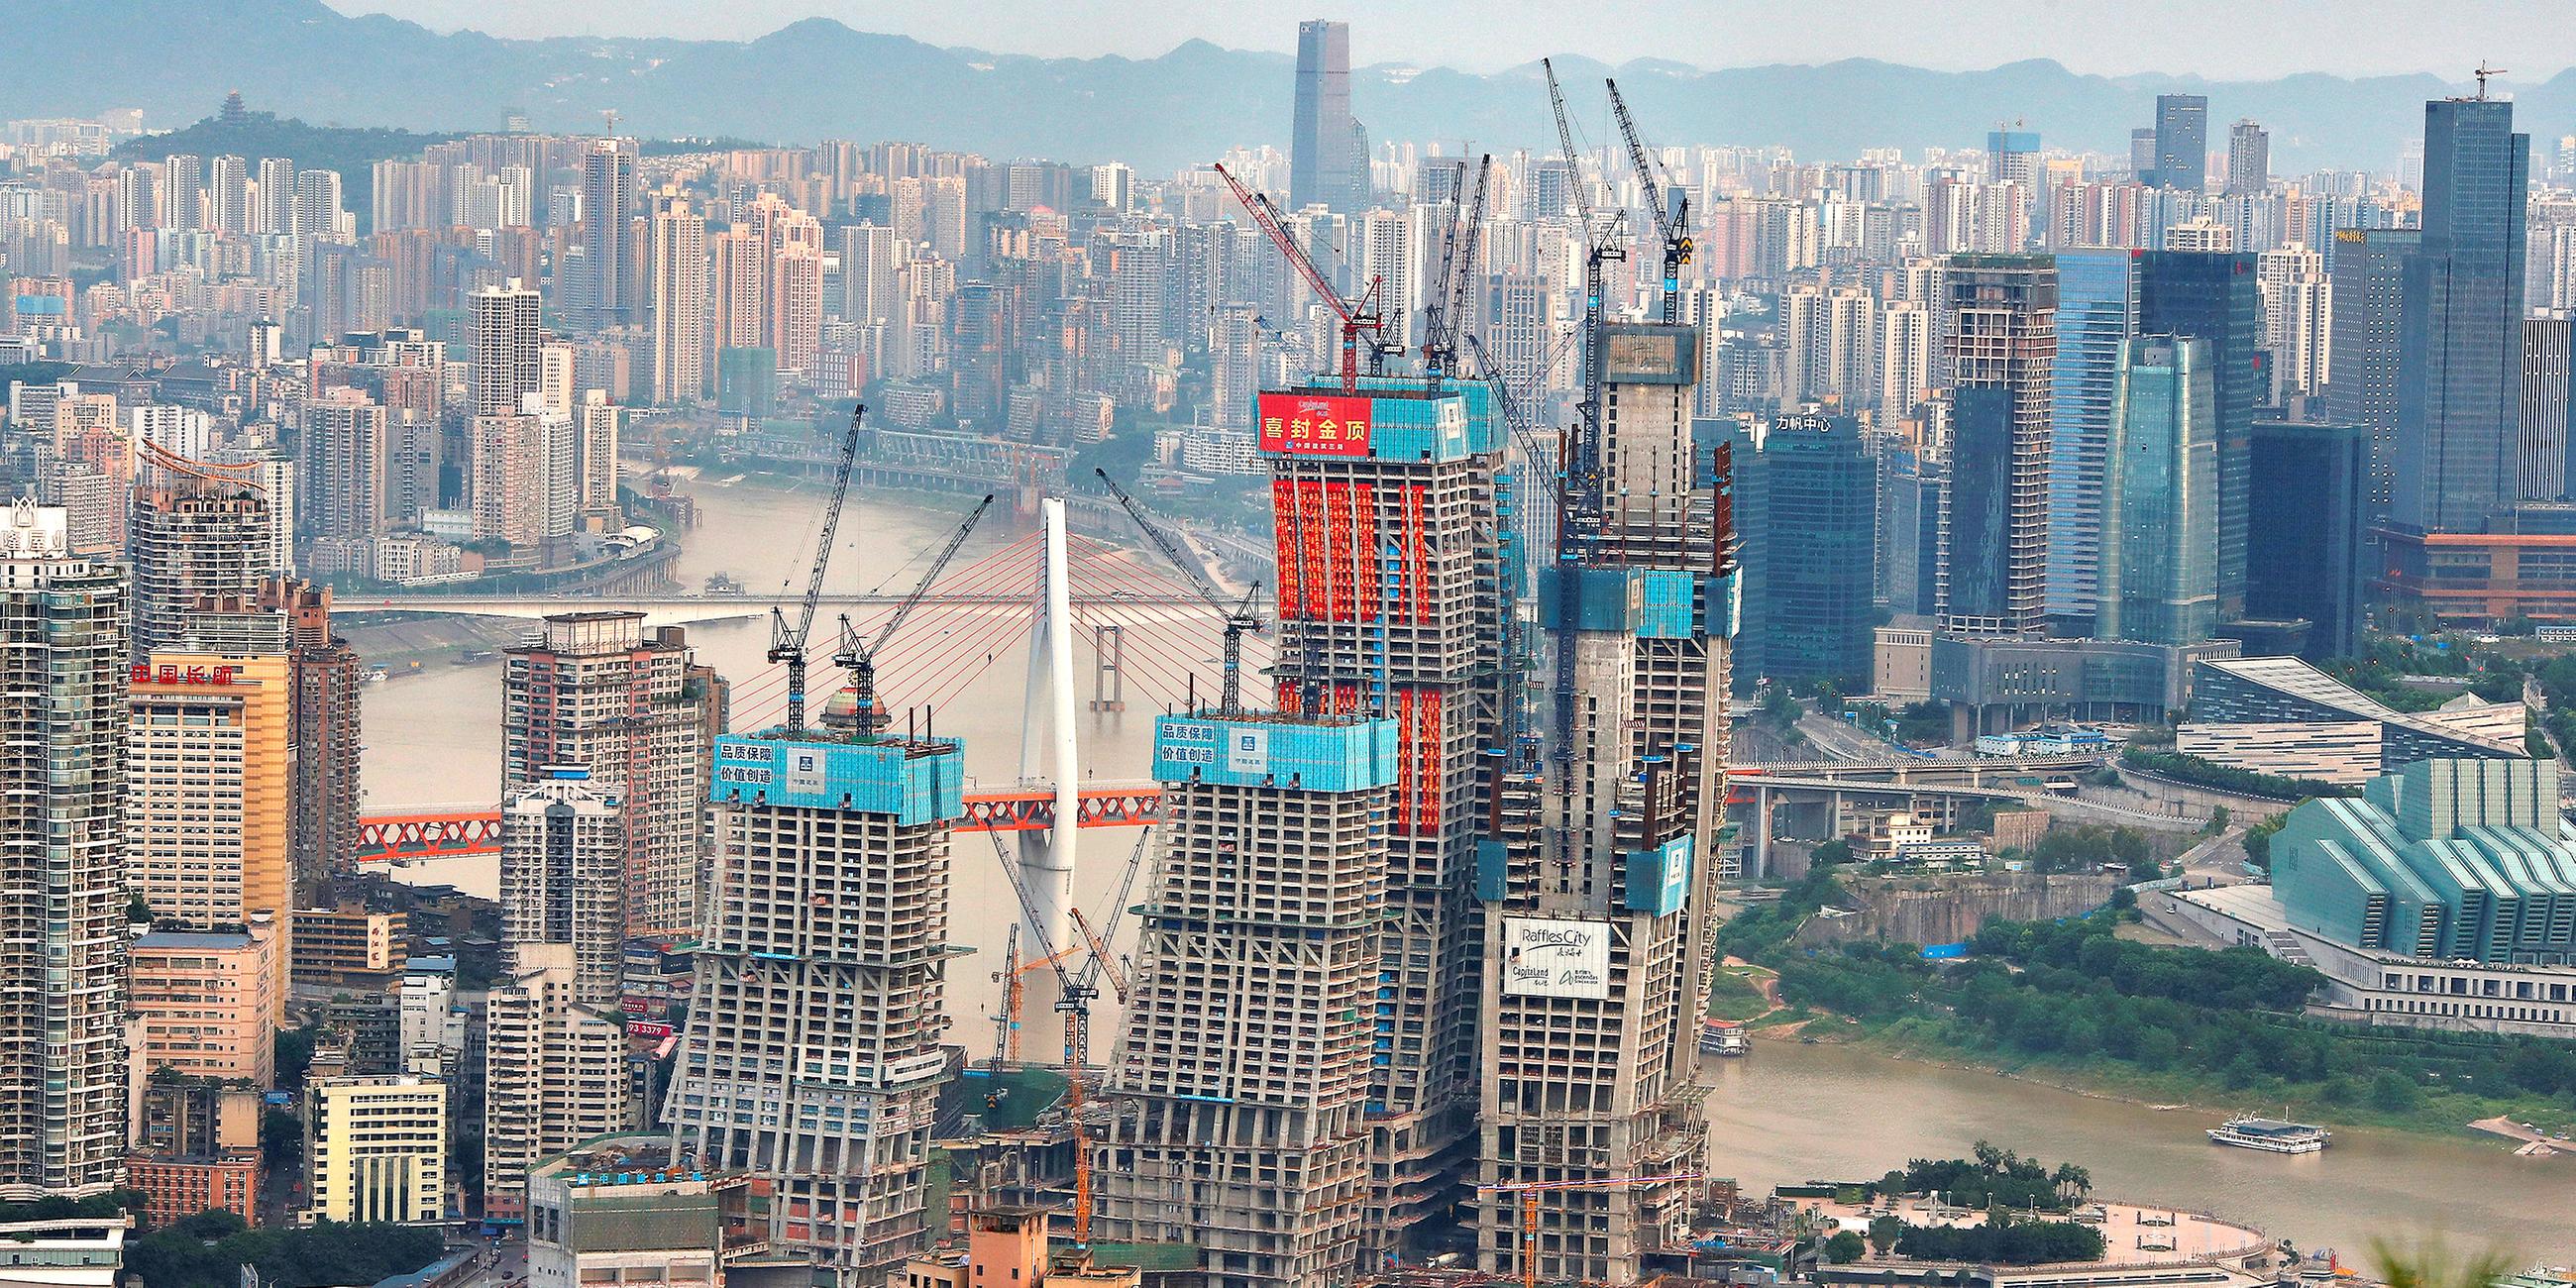 Bau von Hochhäusern in Chongqing, China